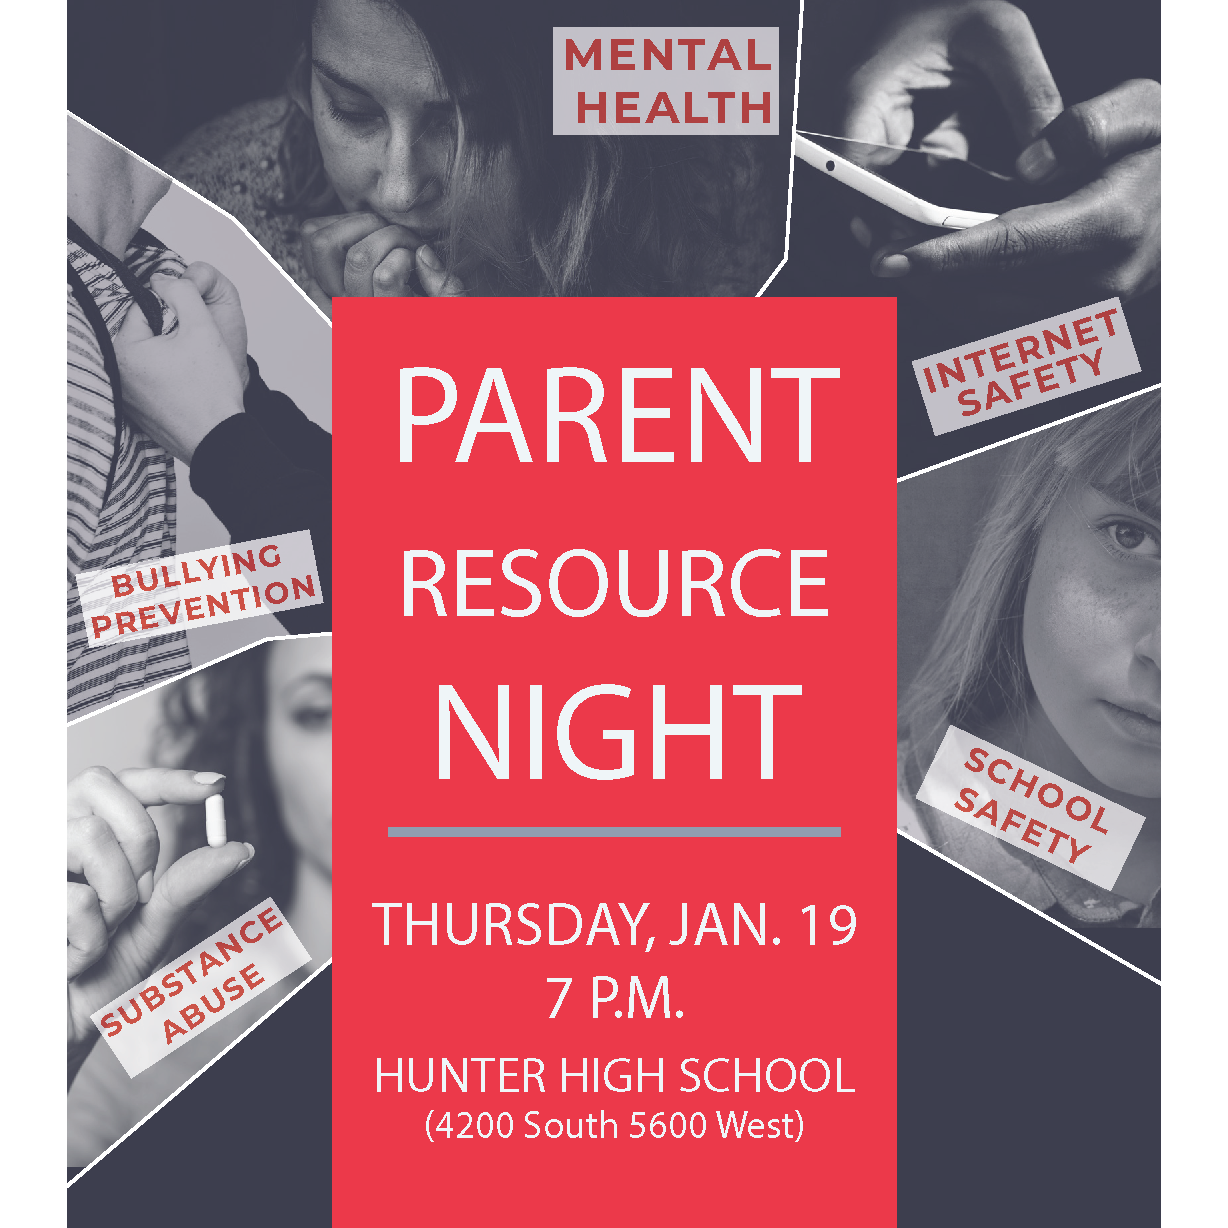 Parent Resource Night at Hunter High